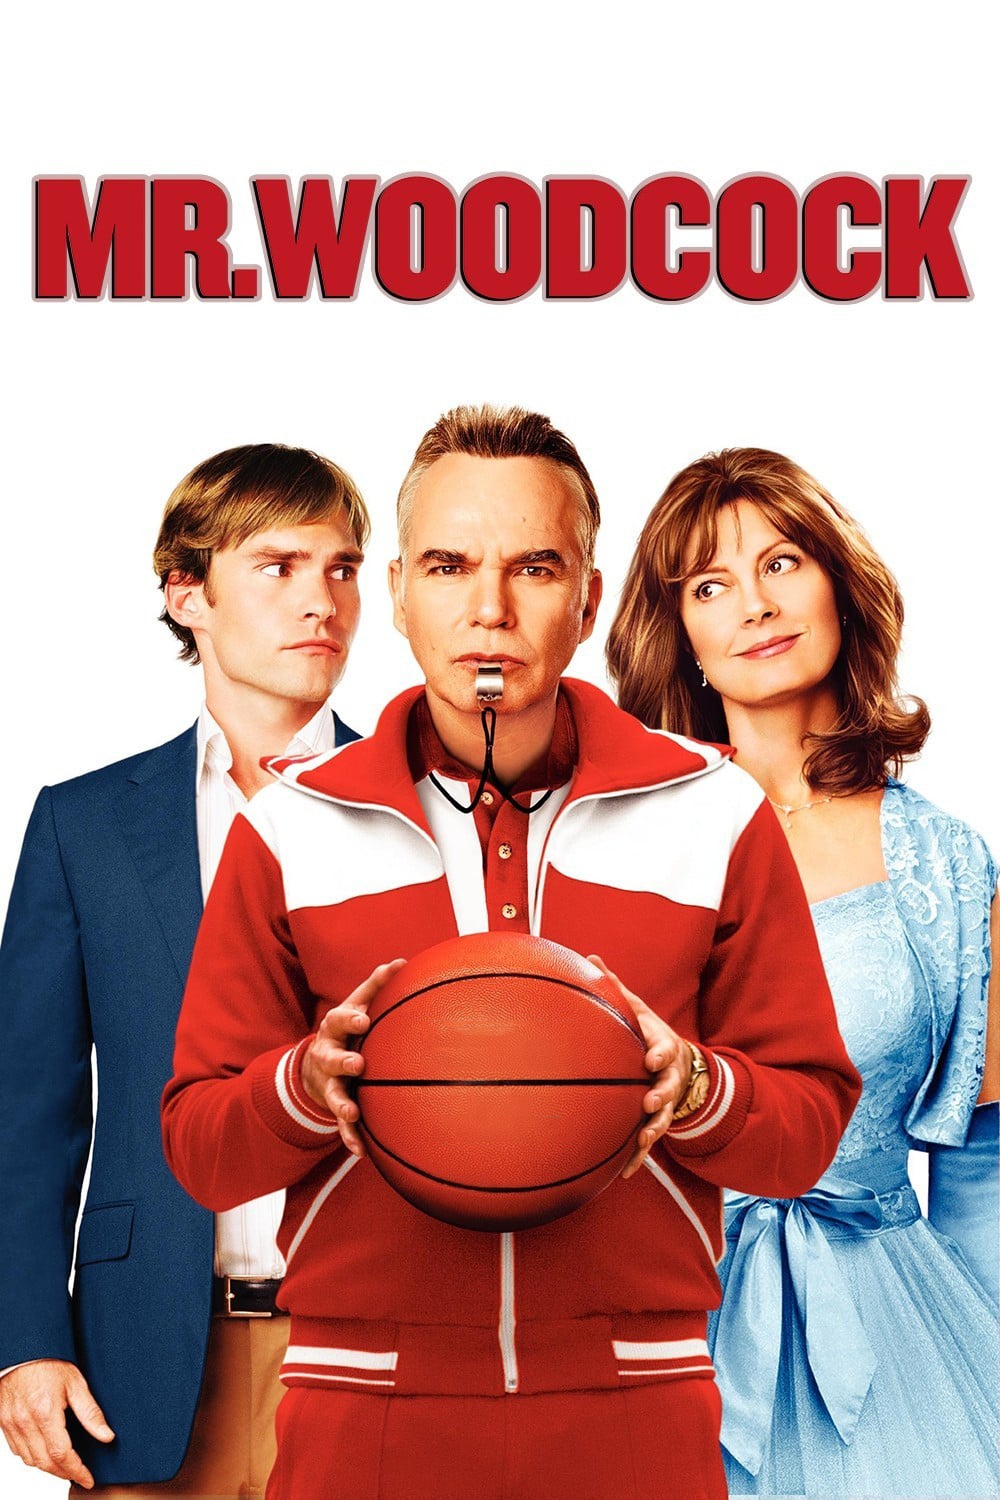 Plakat von "Mr. Woodcock"